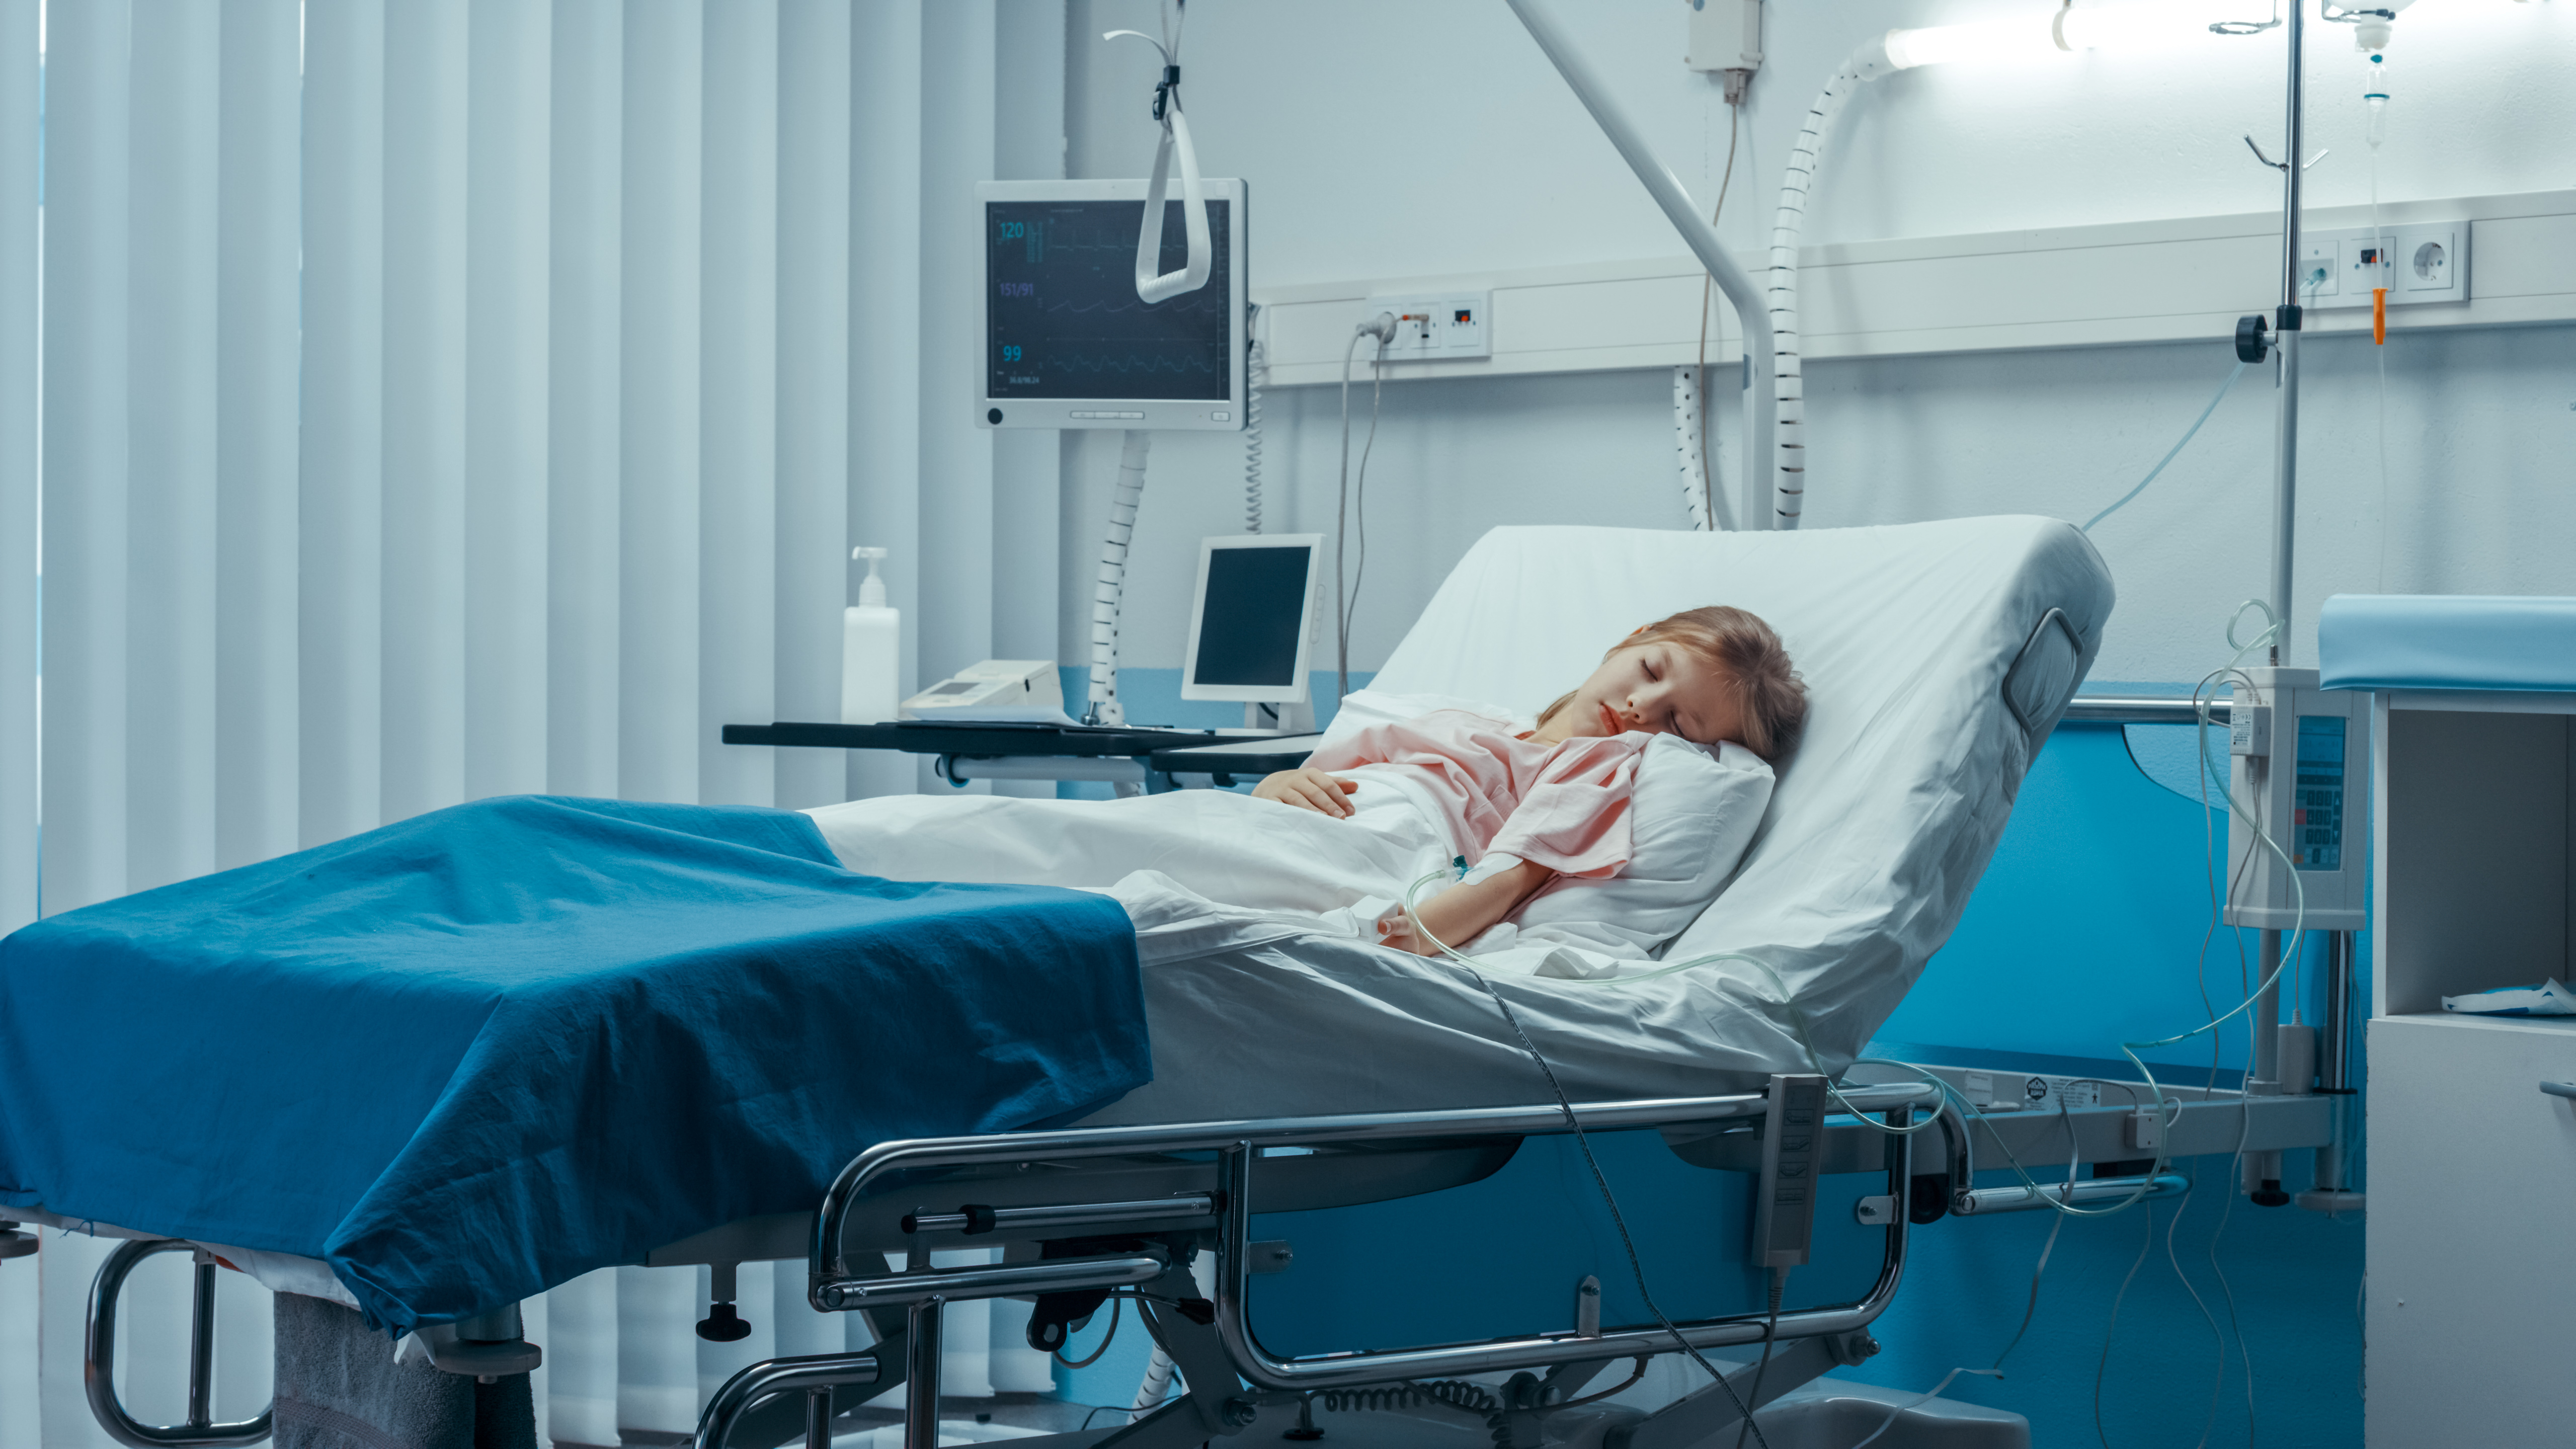 Niña enferma duerme en una cama del hospital infantil | Fuente: Shutterstock.com